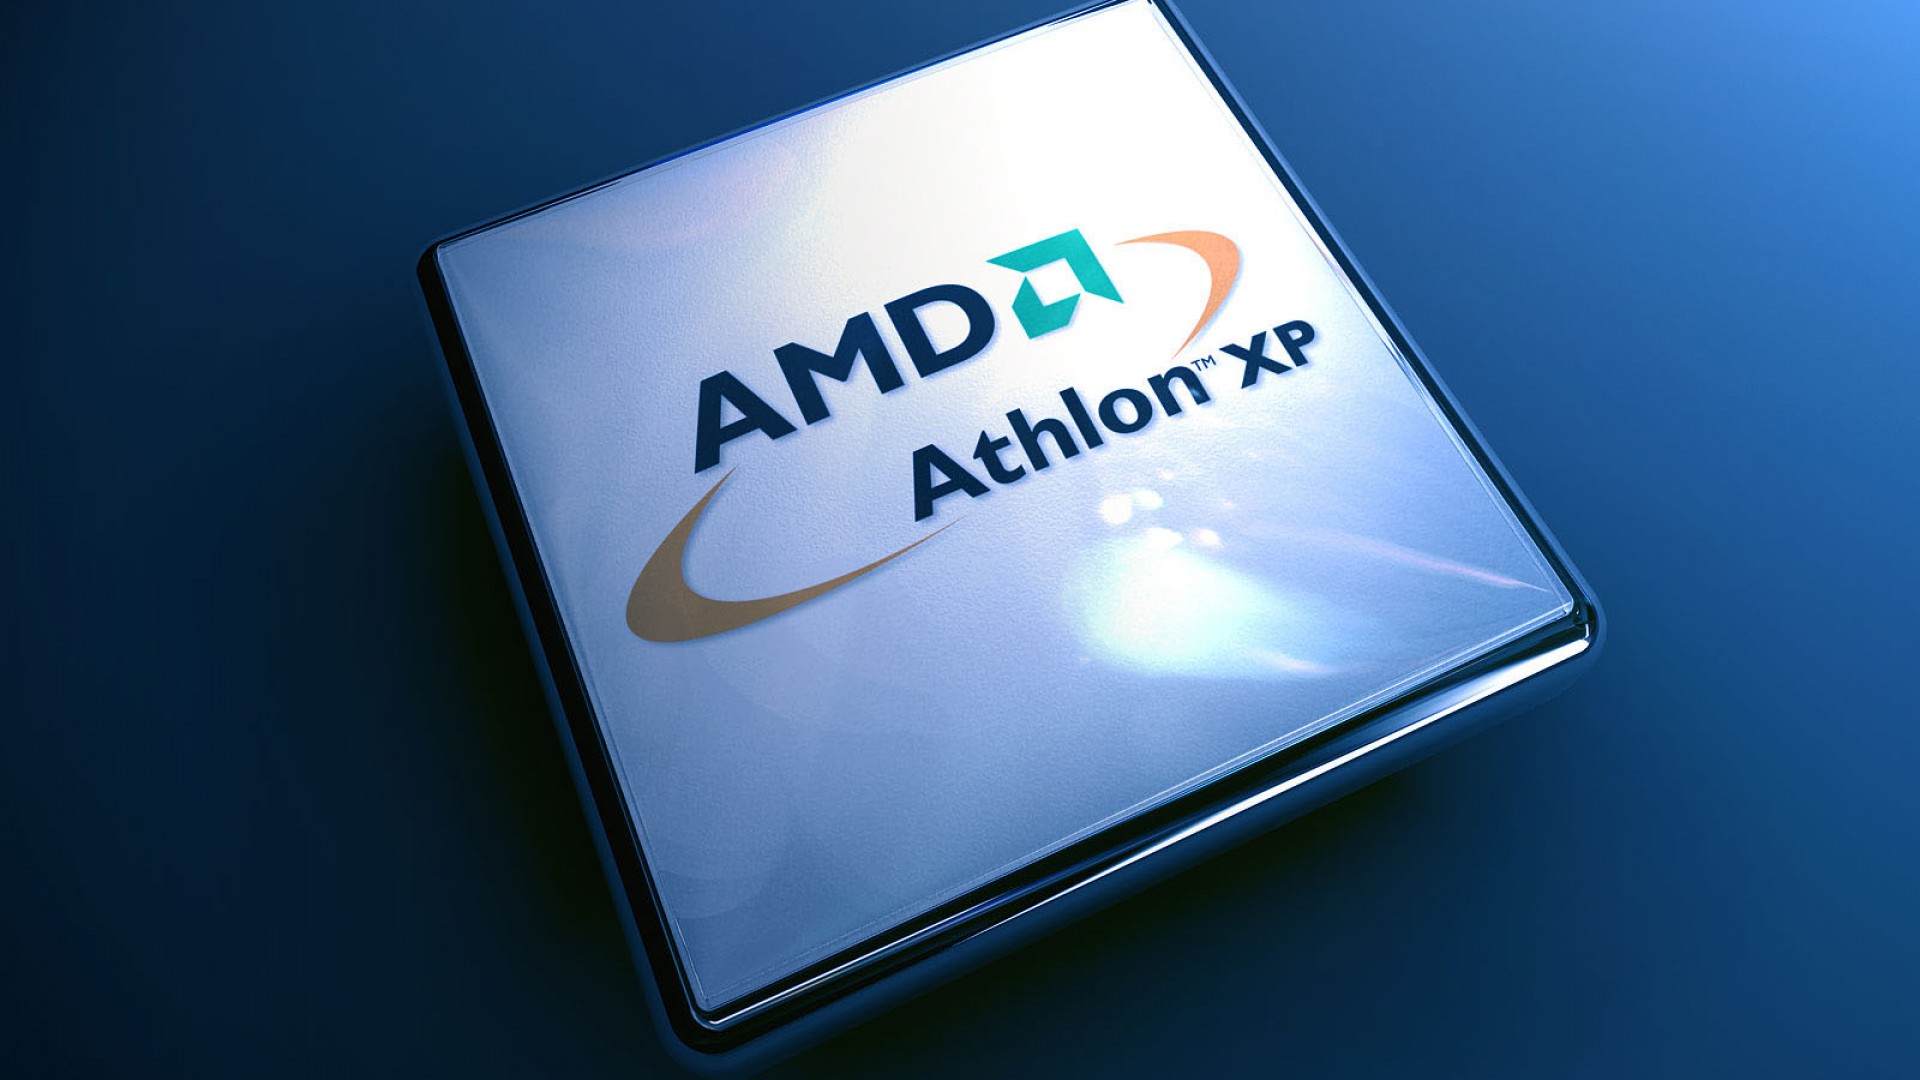 AMD Athlon XP.jpg